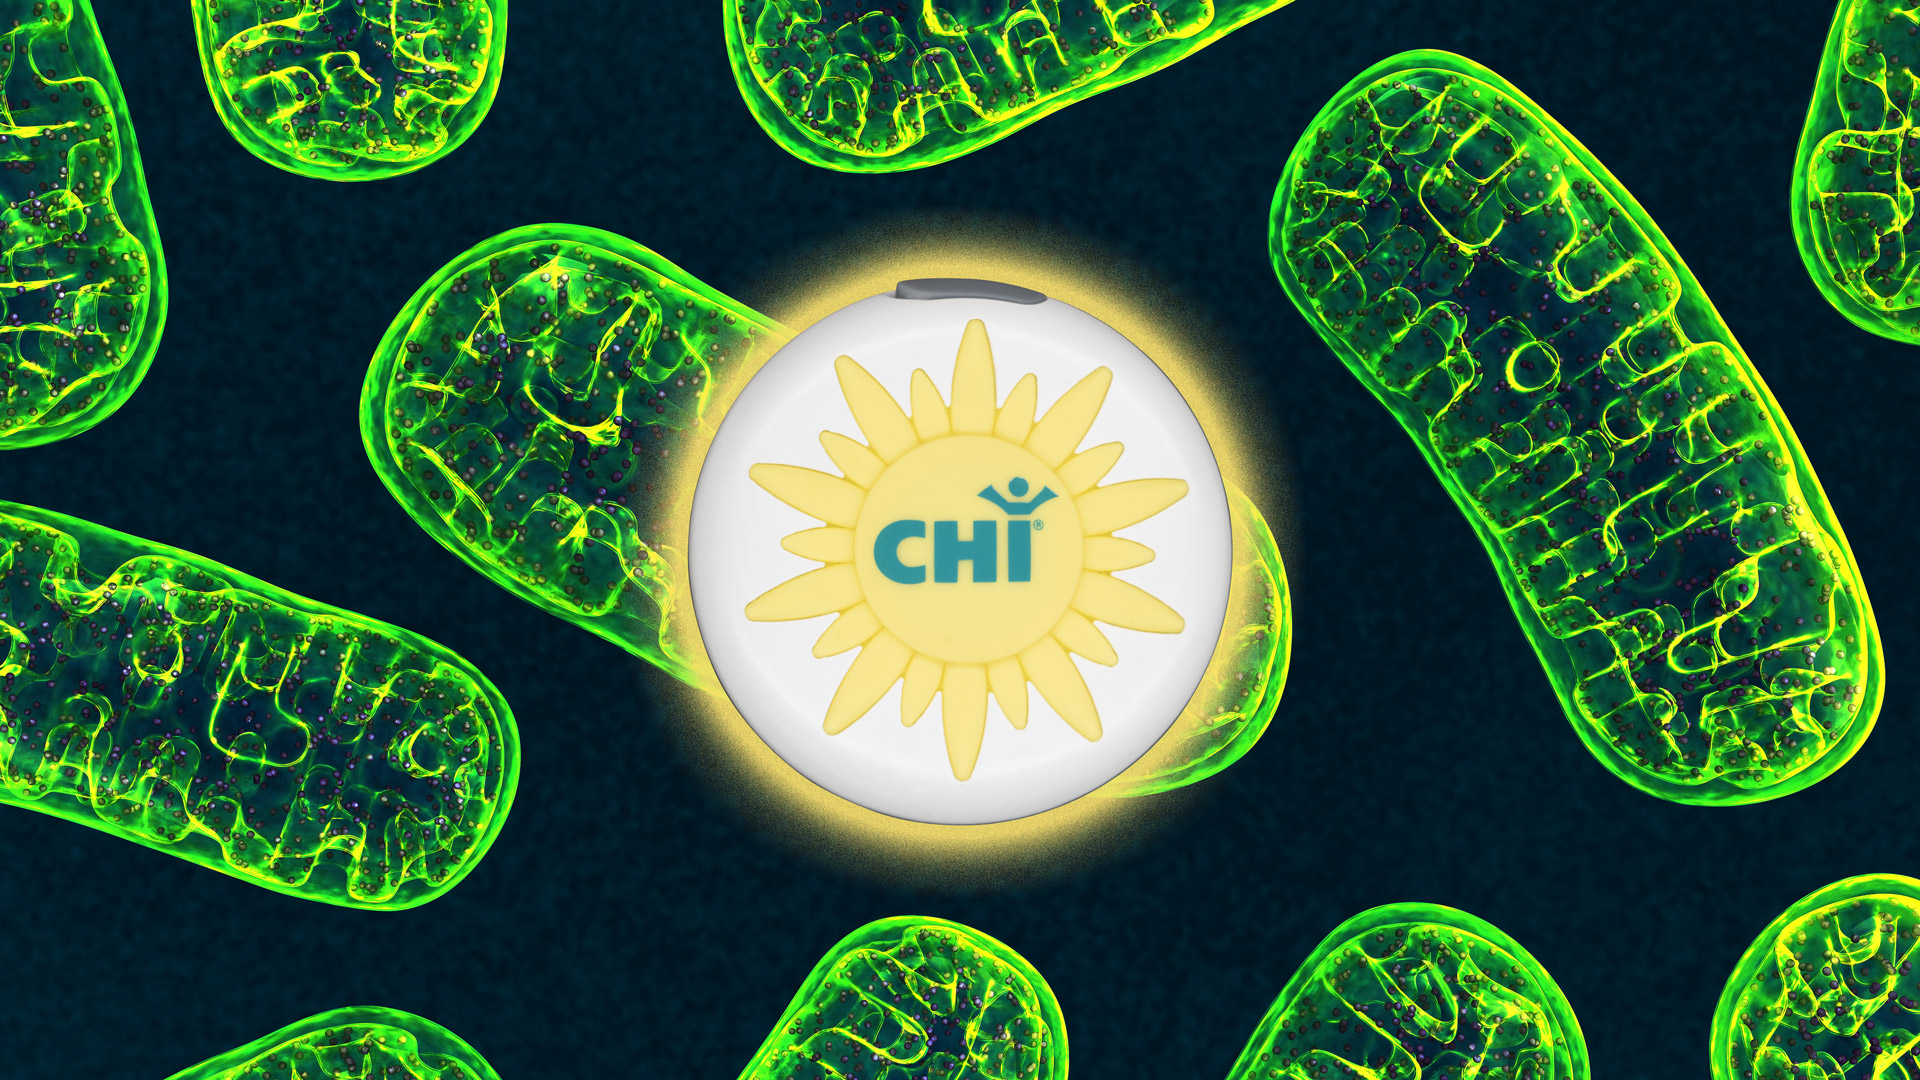 CHI Sonne und Mitochondrien